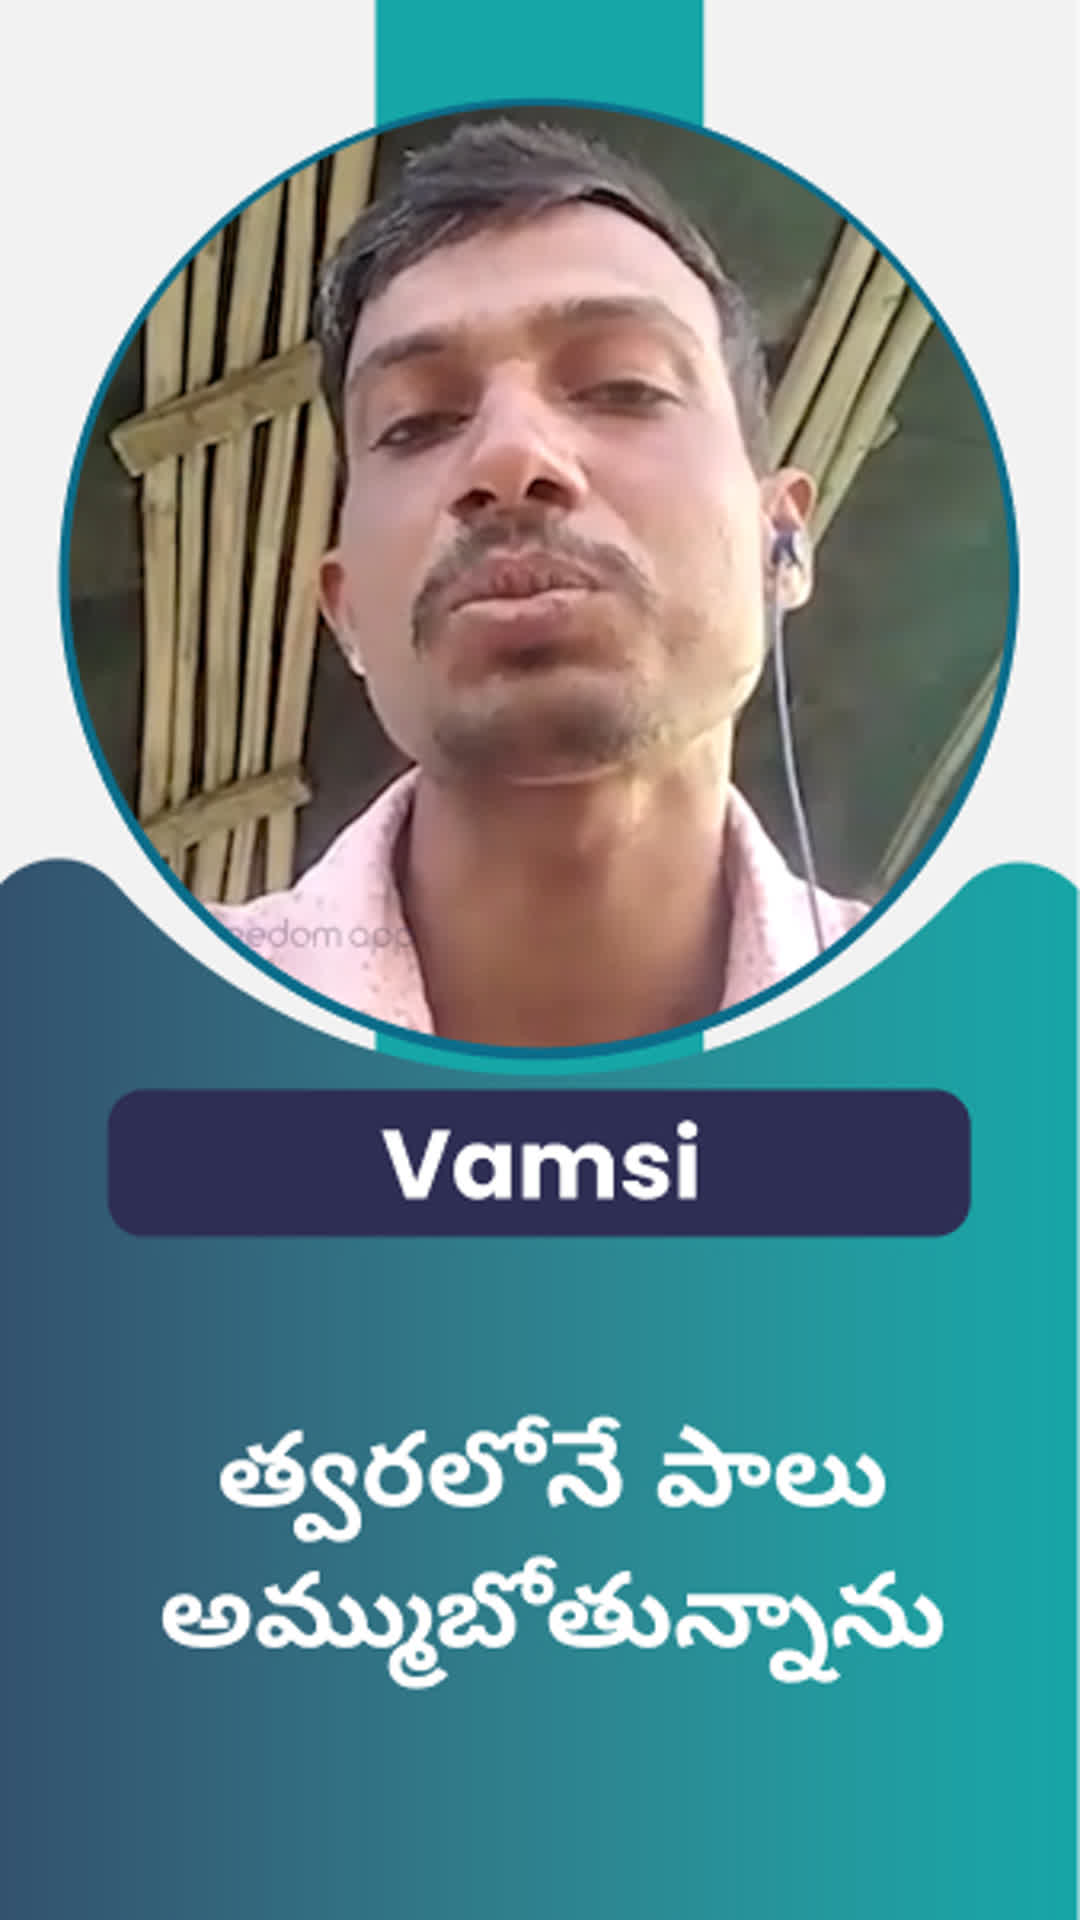 VAMSHI's Honest Review of ffreedom app - Mahbubnagar ,Telangana